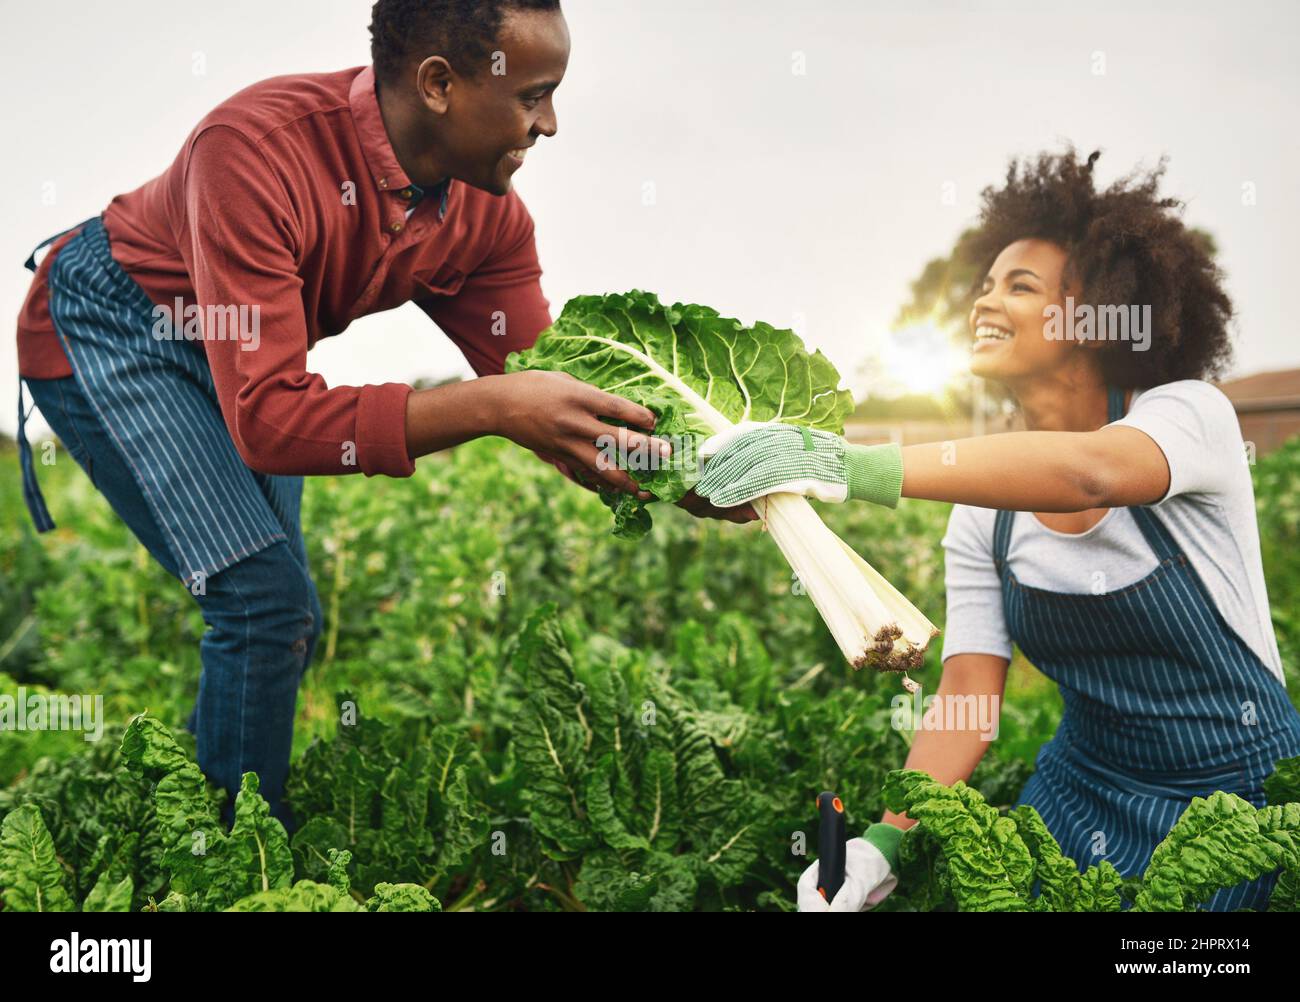 Debe ser temporada de espinacas. Foto recortada de una joven pareja de granjas trabajando en los campos. Foto de stock